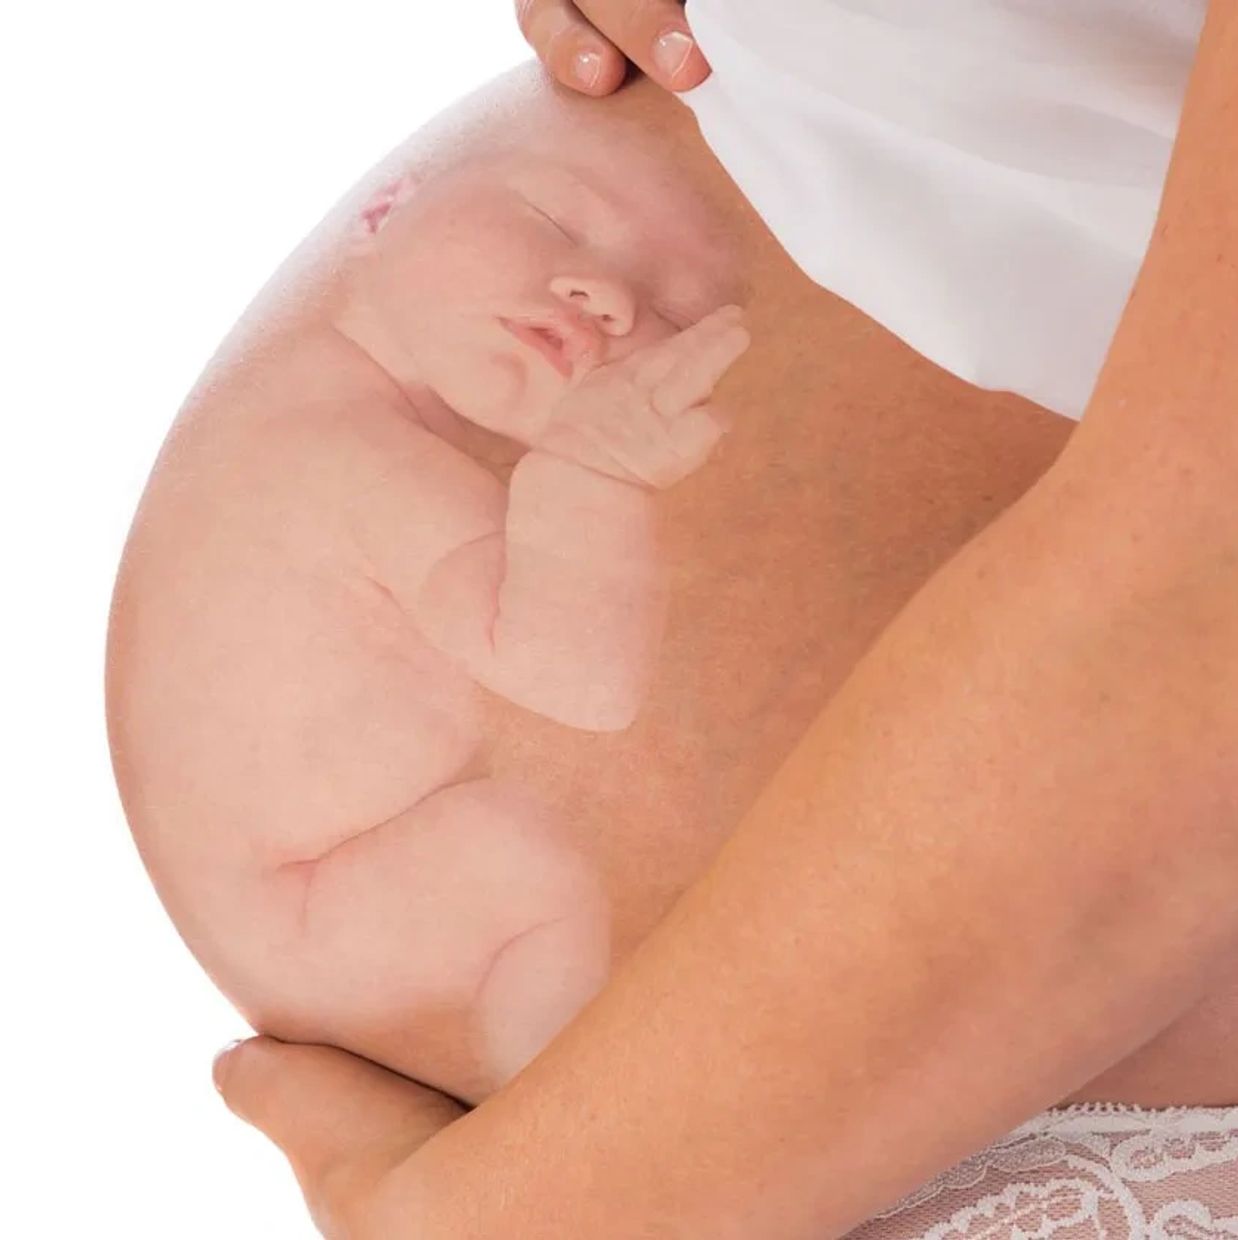 breech baby illustration of breech presentation baby in uterus